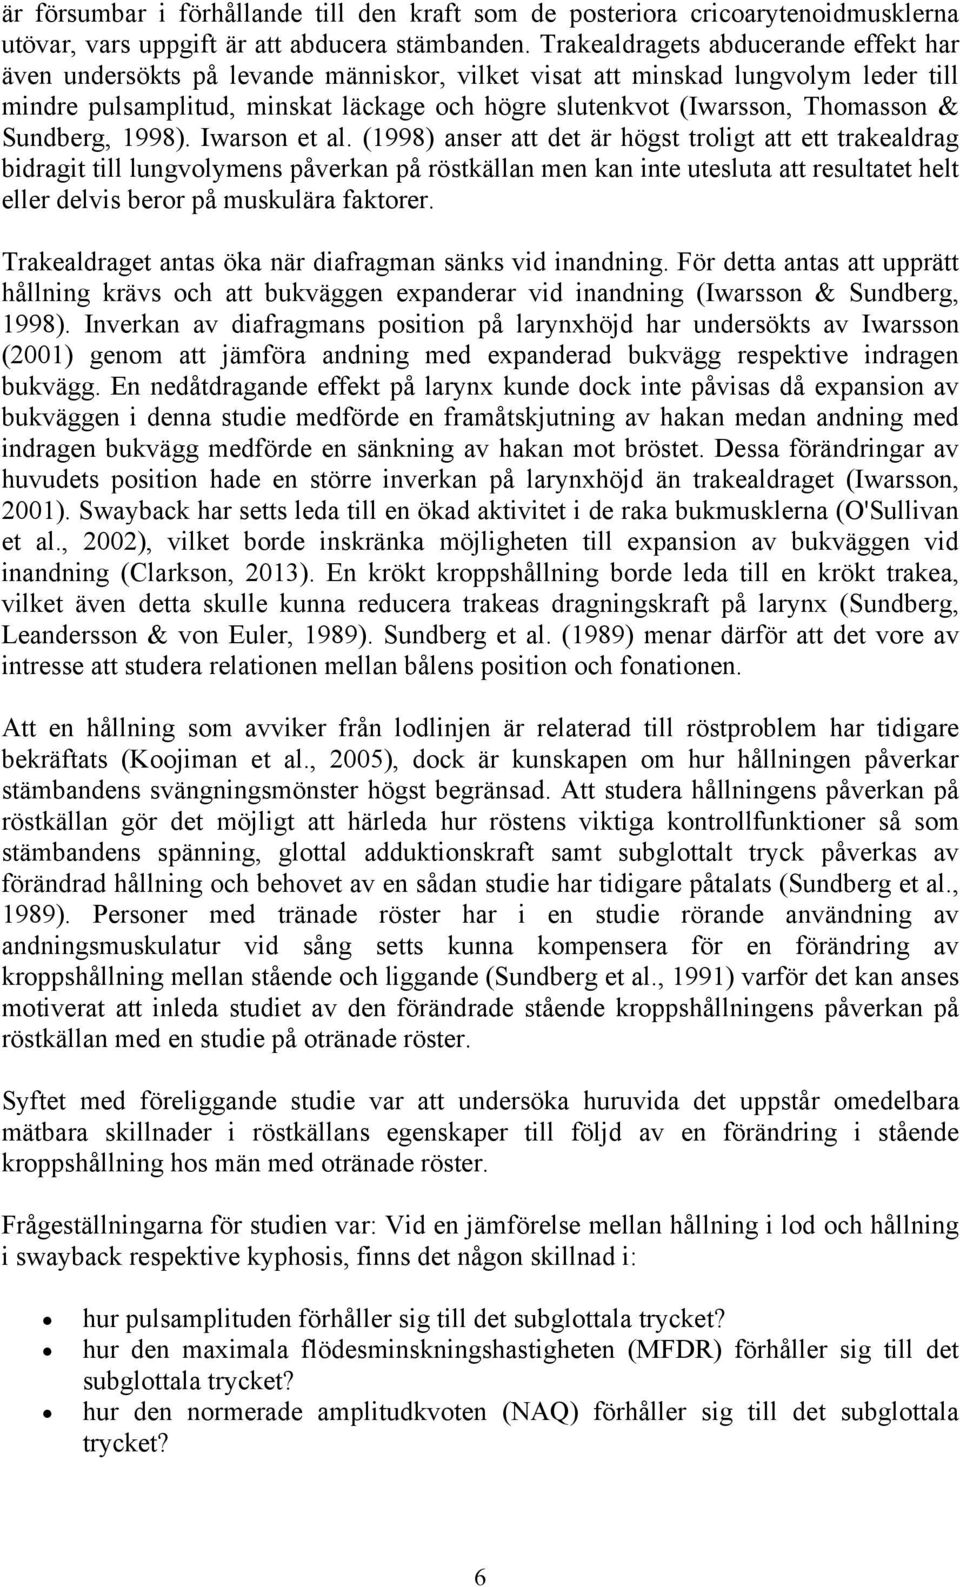 Thomasson & Sundberg, 1998). Iwarson et al.